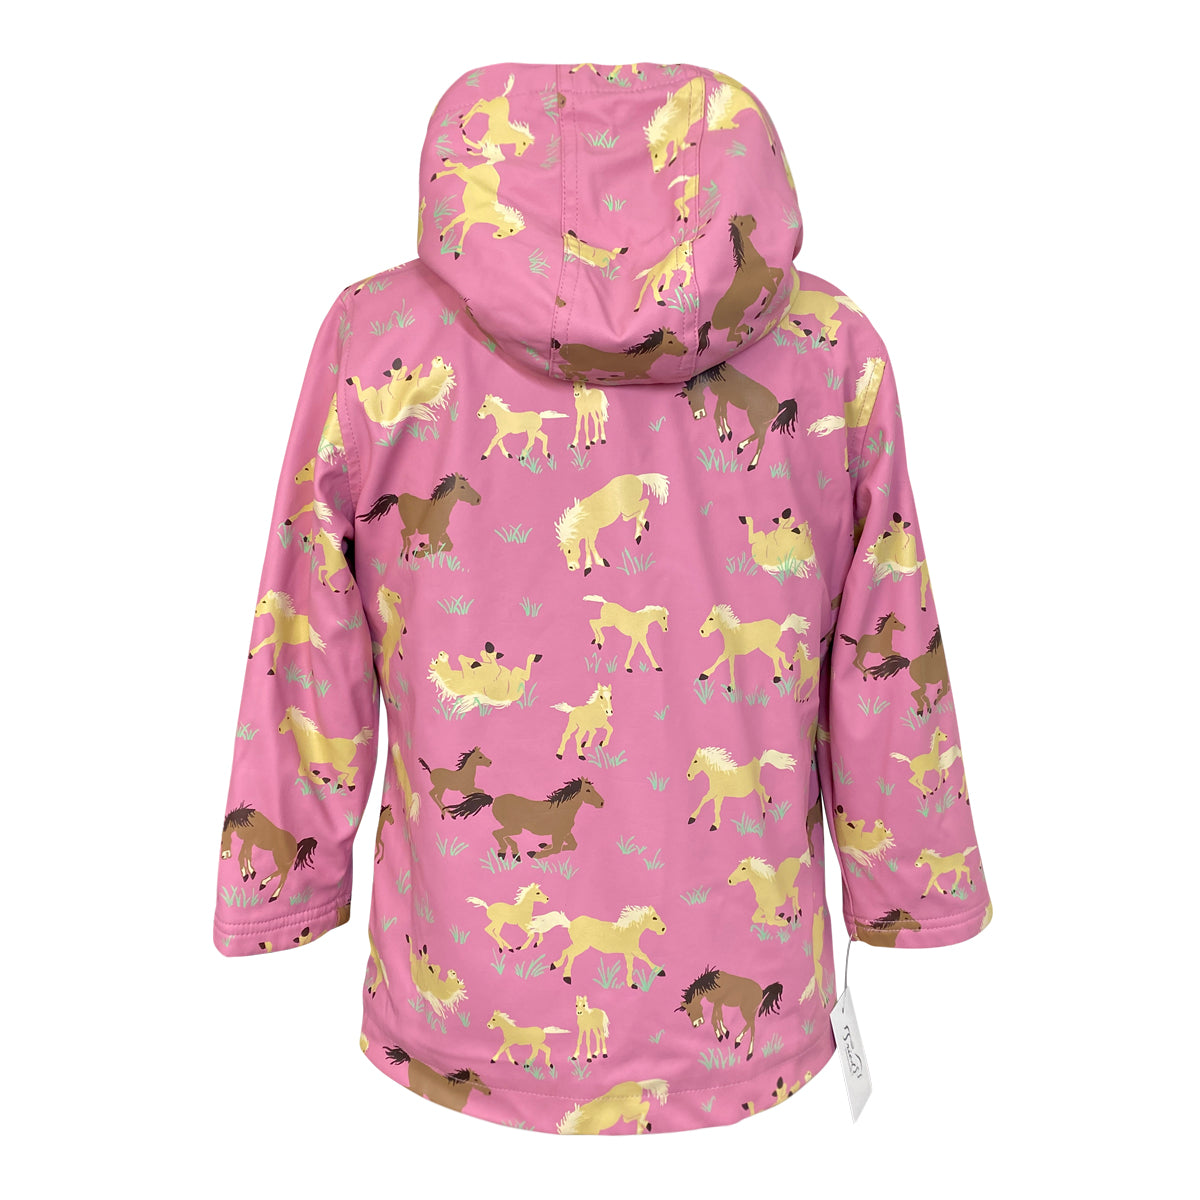 Hatley 'Pasture' Raincoat in Light Pink